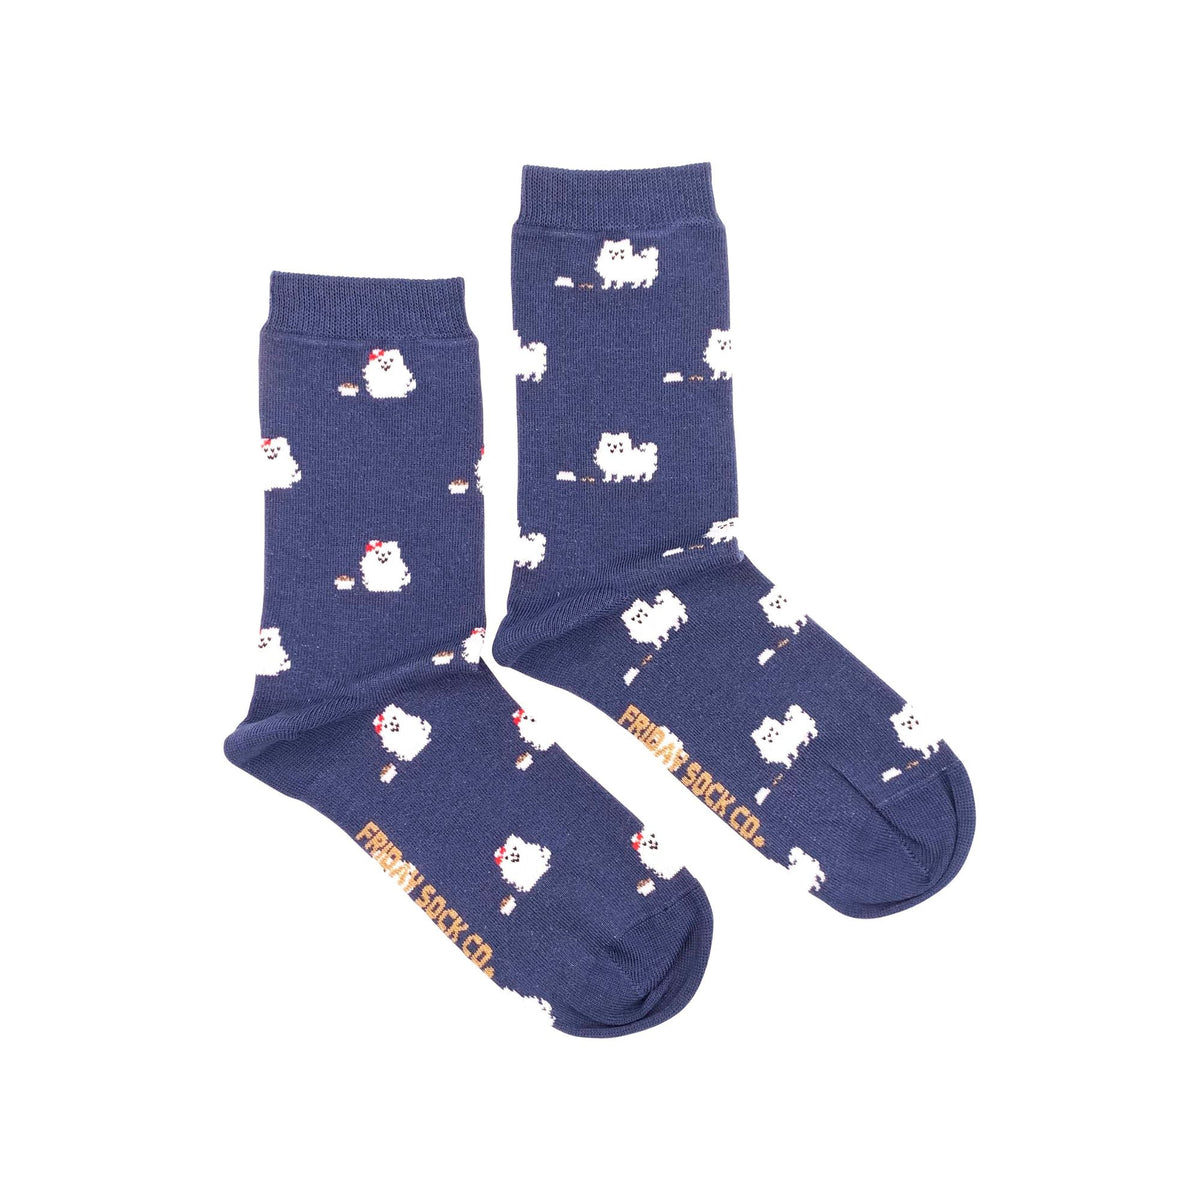 Friday Sock Co. - Women's Socks Pomeranian Mismatched